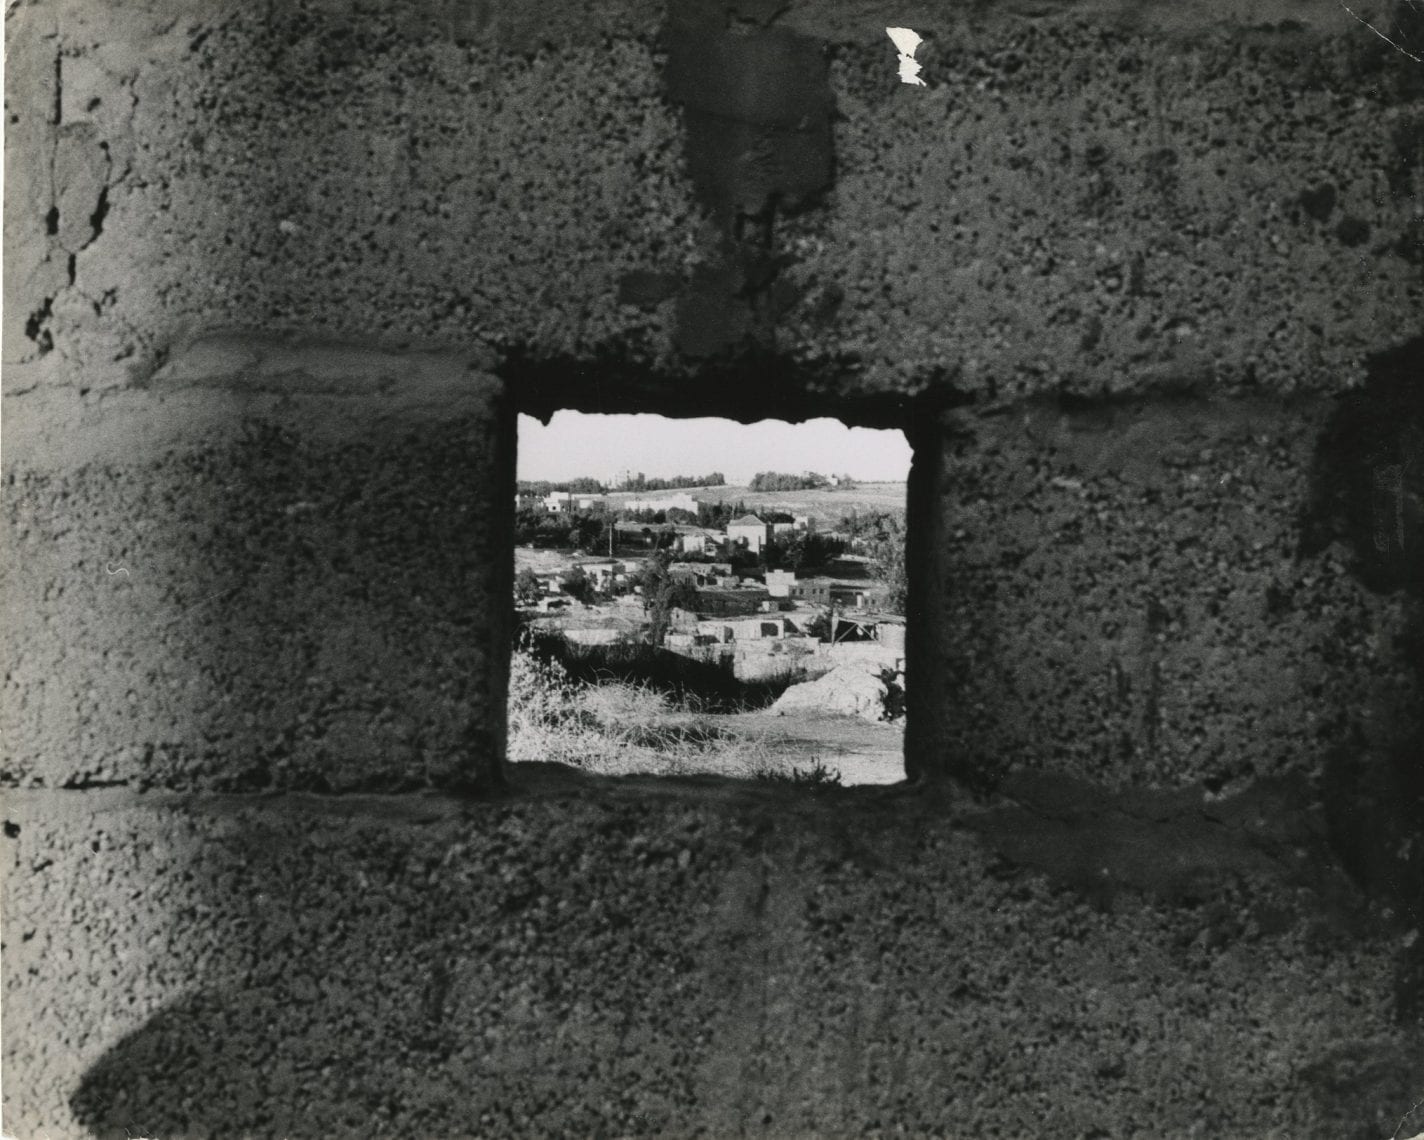 מבט לעבר שטח ירדן מעבר לחומה, ירושלים, 1948 (צילום: לני זוננפלד. המרכז לתיעוד חזותי ע"ש אוסטר במוזיאון העם היהודי, אוסף זוננפלד)